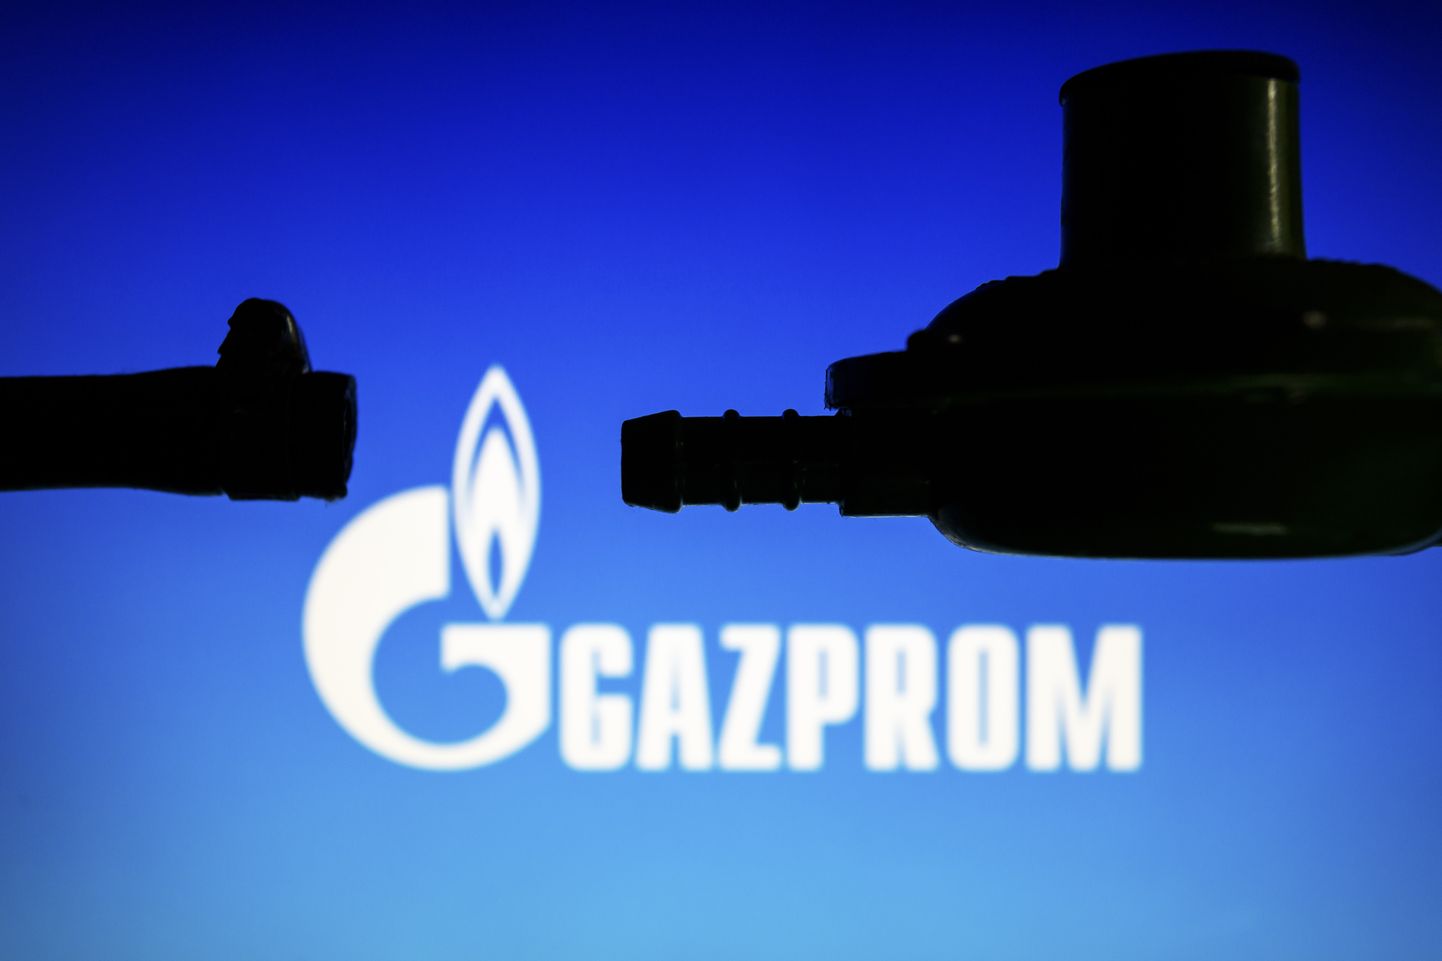 "Gazprom" logo.